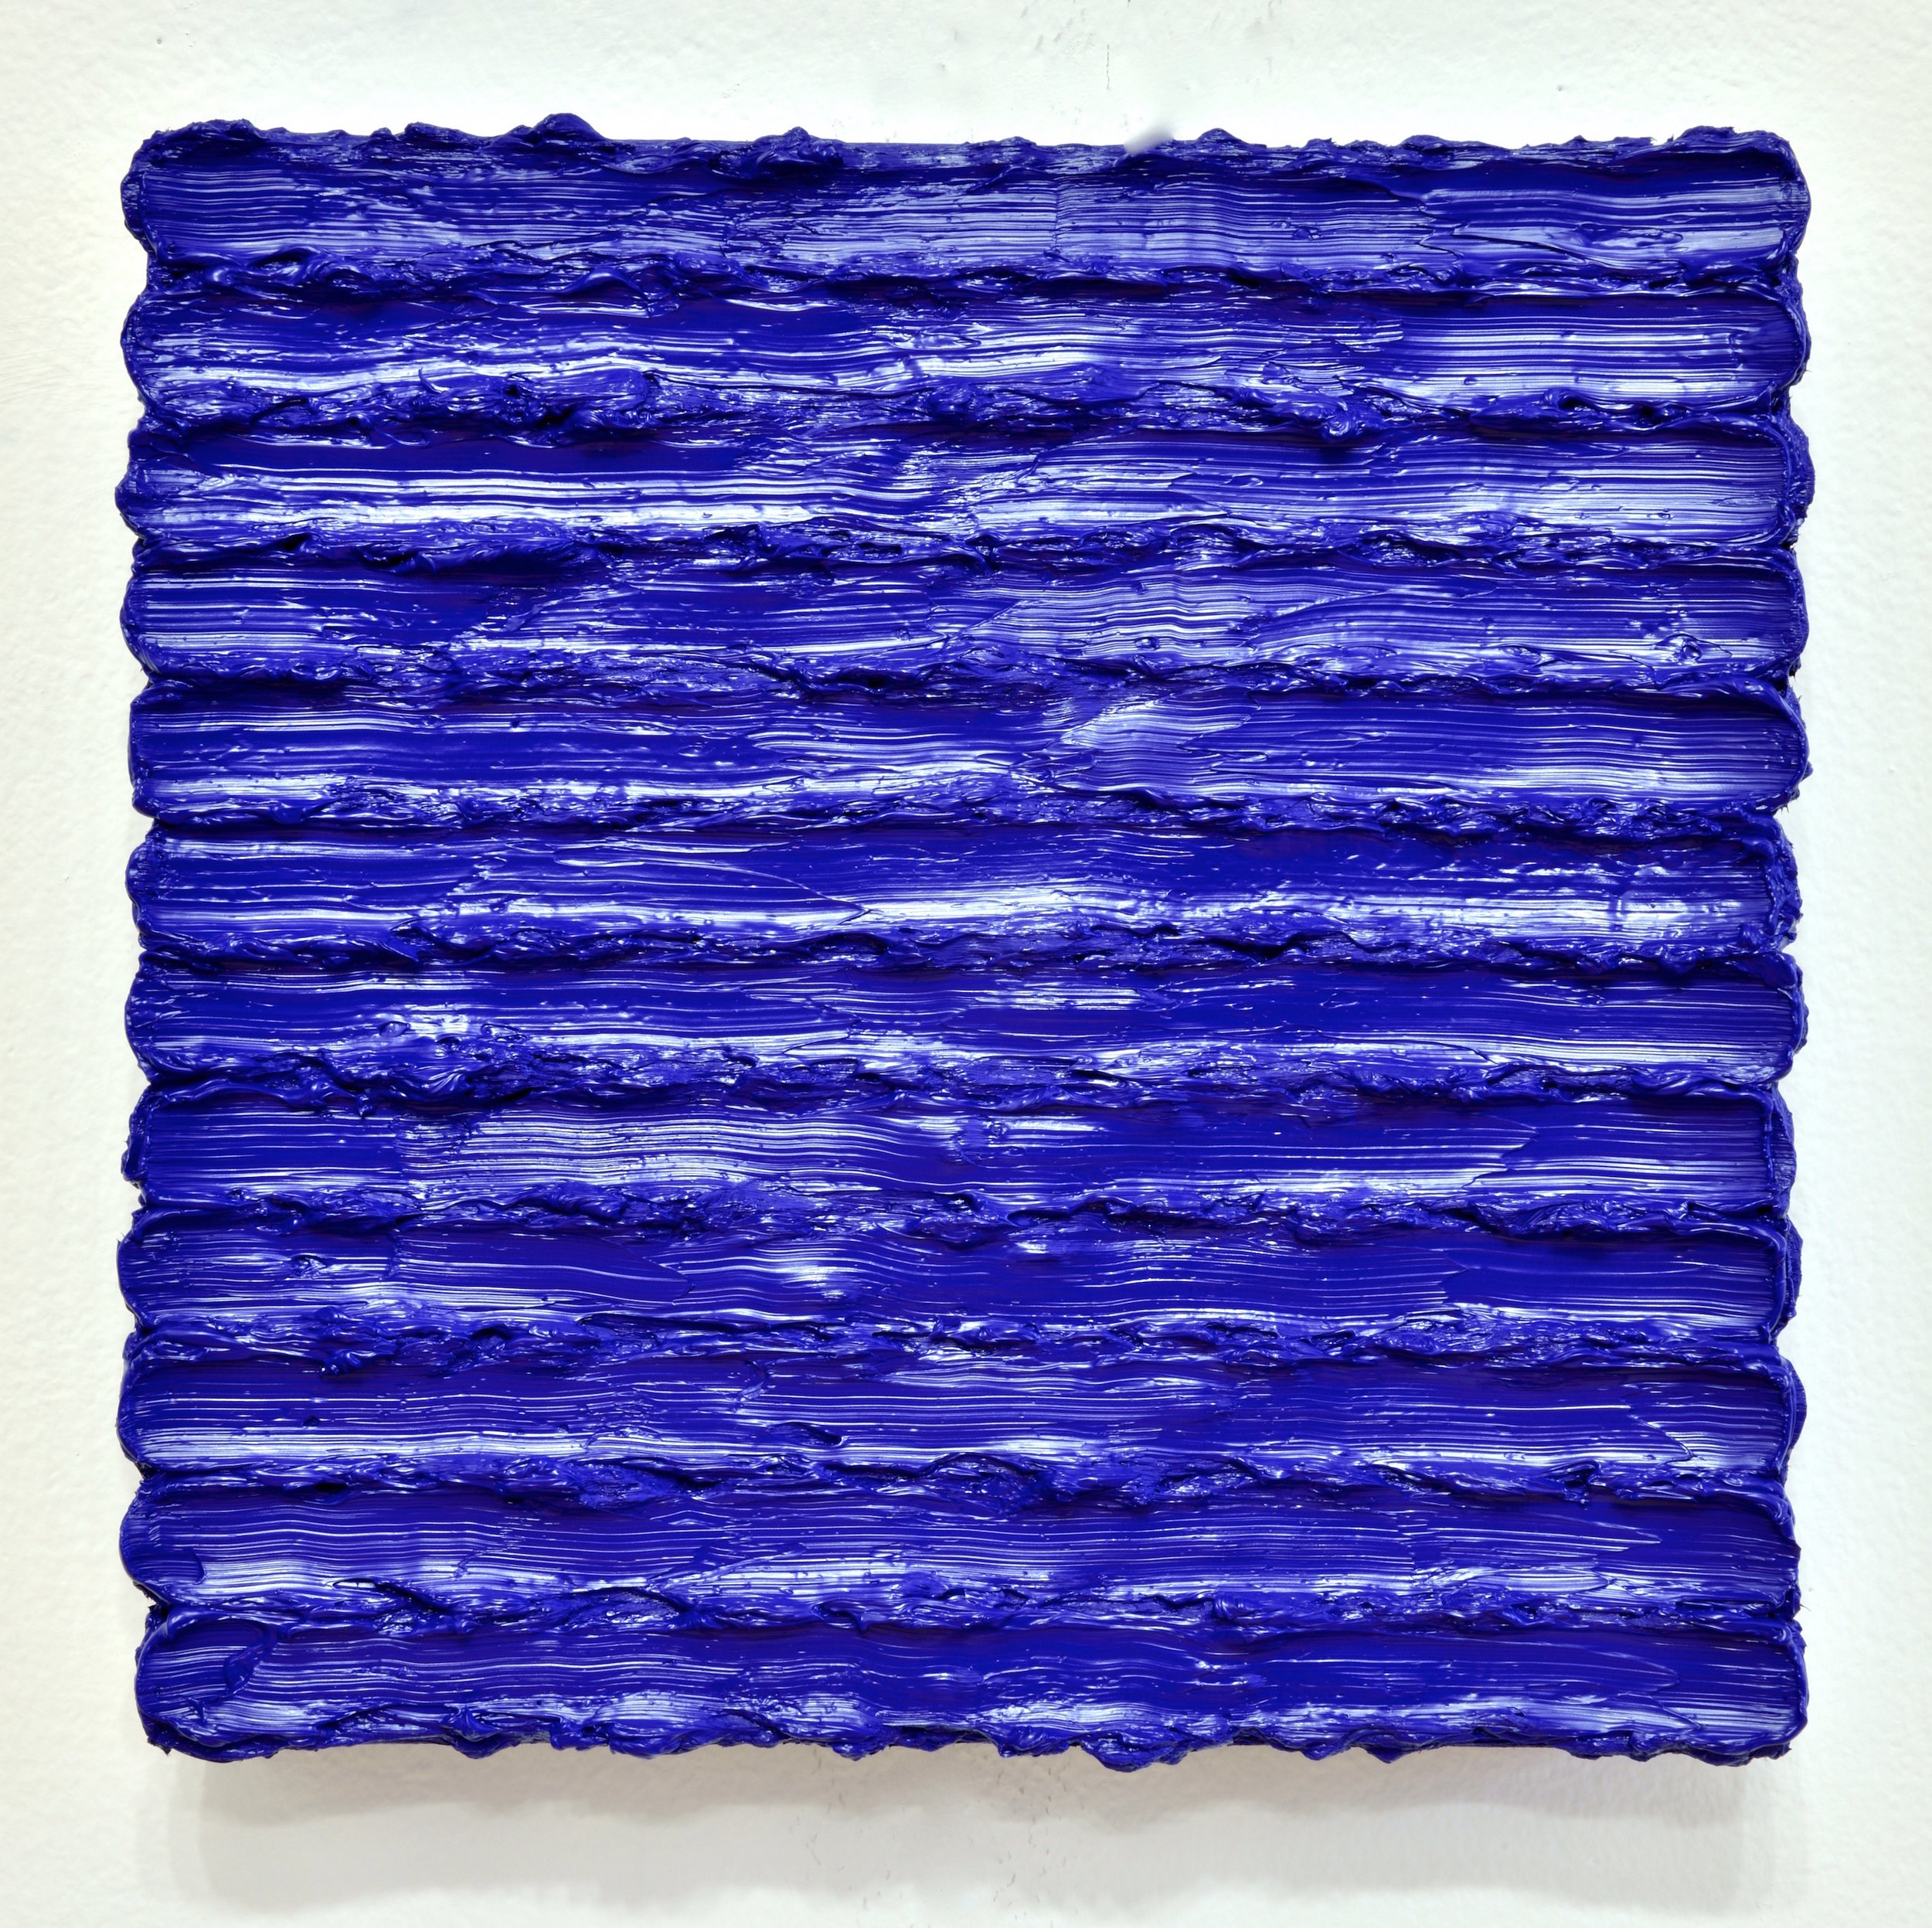 Bluedust, 2014 